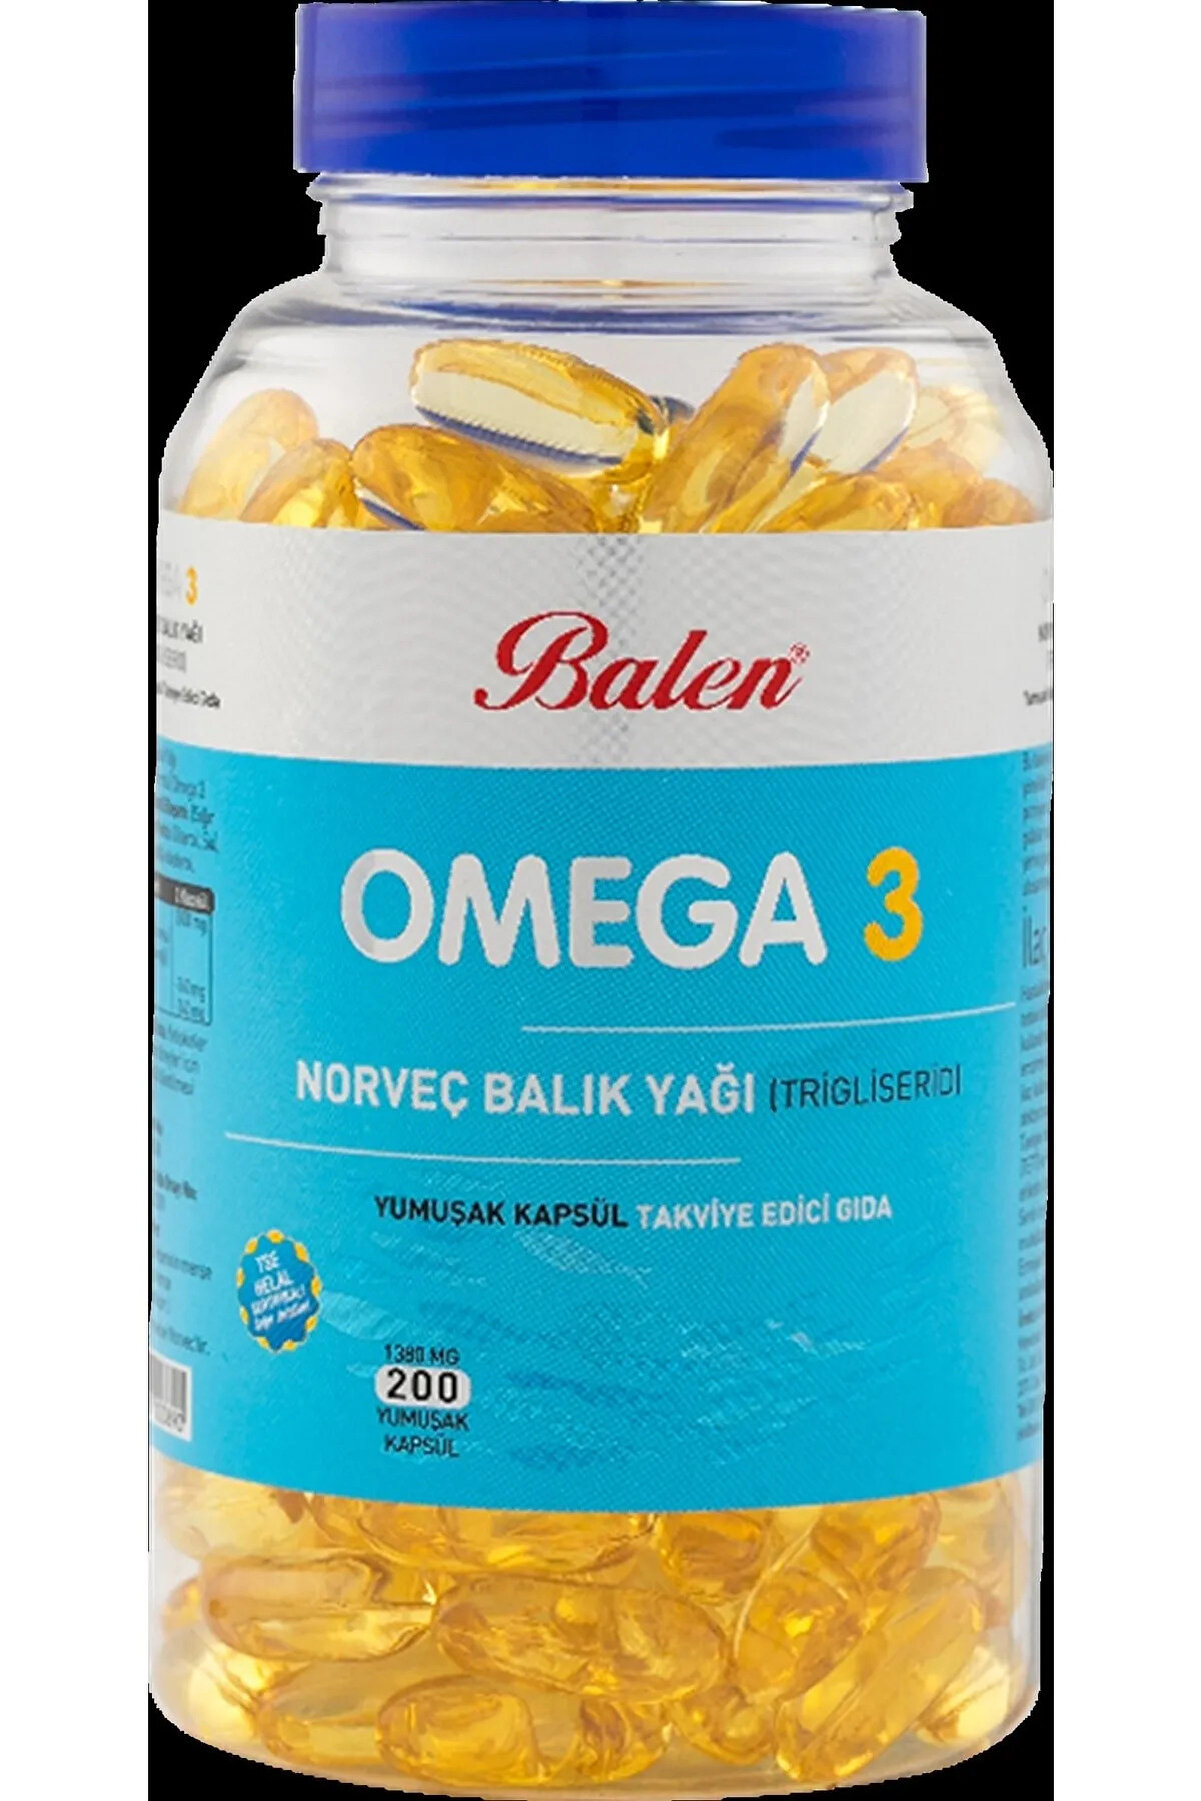 Balen Omega 3 Norveç Balık Yağı Yumuşak Kapsül 1380 Mg*200